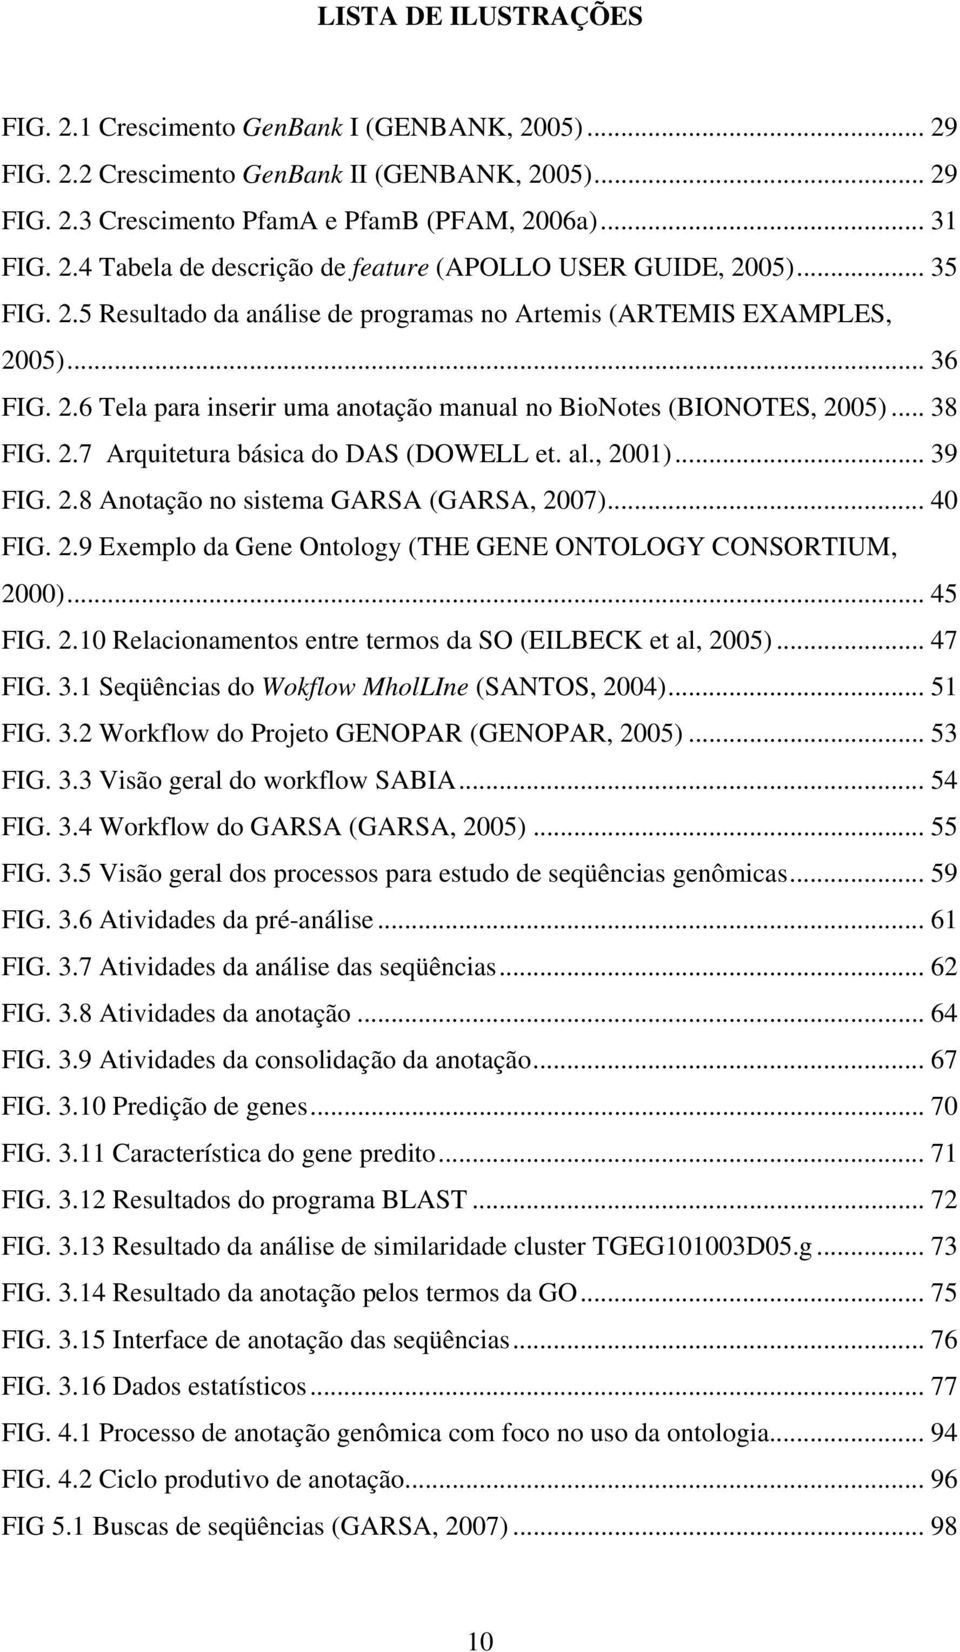 al., 2001)... 39 FIG. 2.8 Anotação no sistema GARSA (GARSA, 2007)... 40 FIG. 2.9 Exemplo da Gene Ontology (THE GENE ONTOLOGY CONSORTIUM, 2000)... 45 FIG. 2.10 Relacionamentos entre termos da SO (EILBECK et al, 2005).